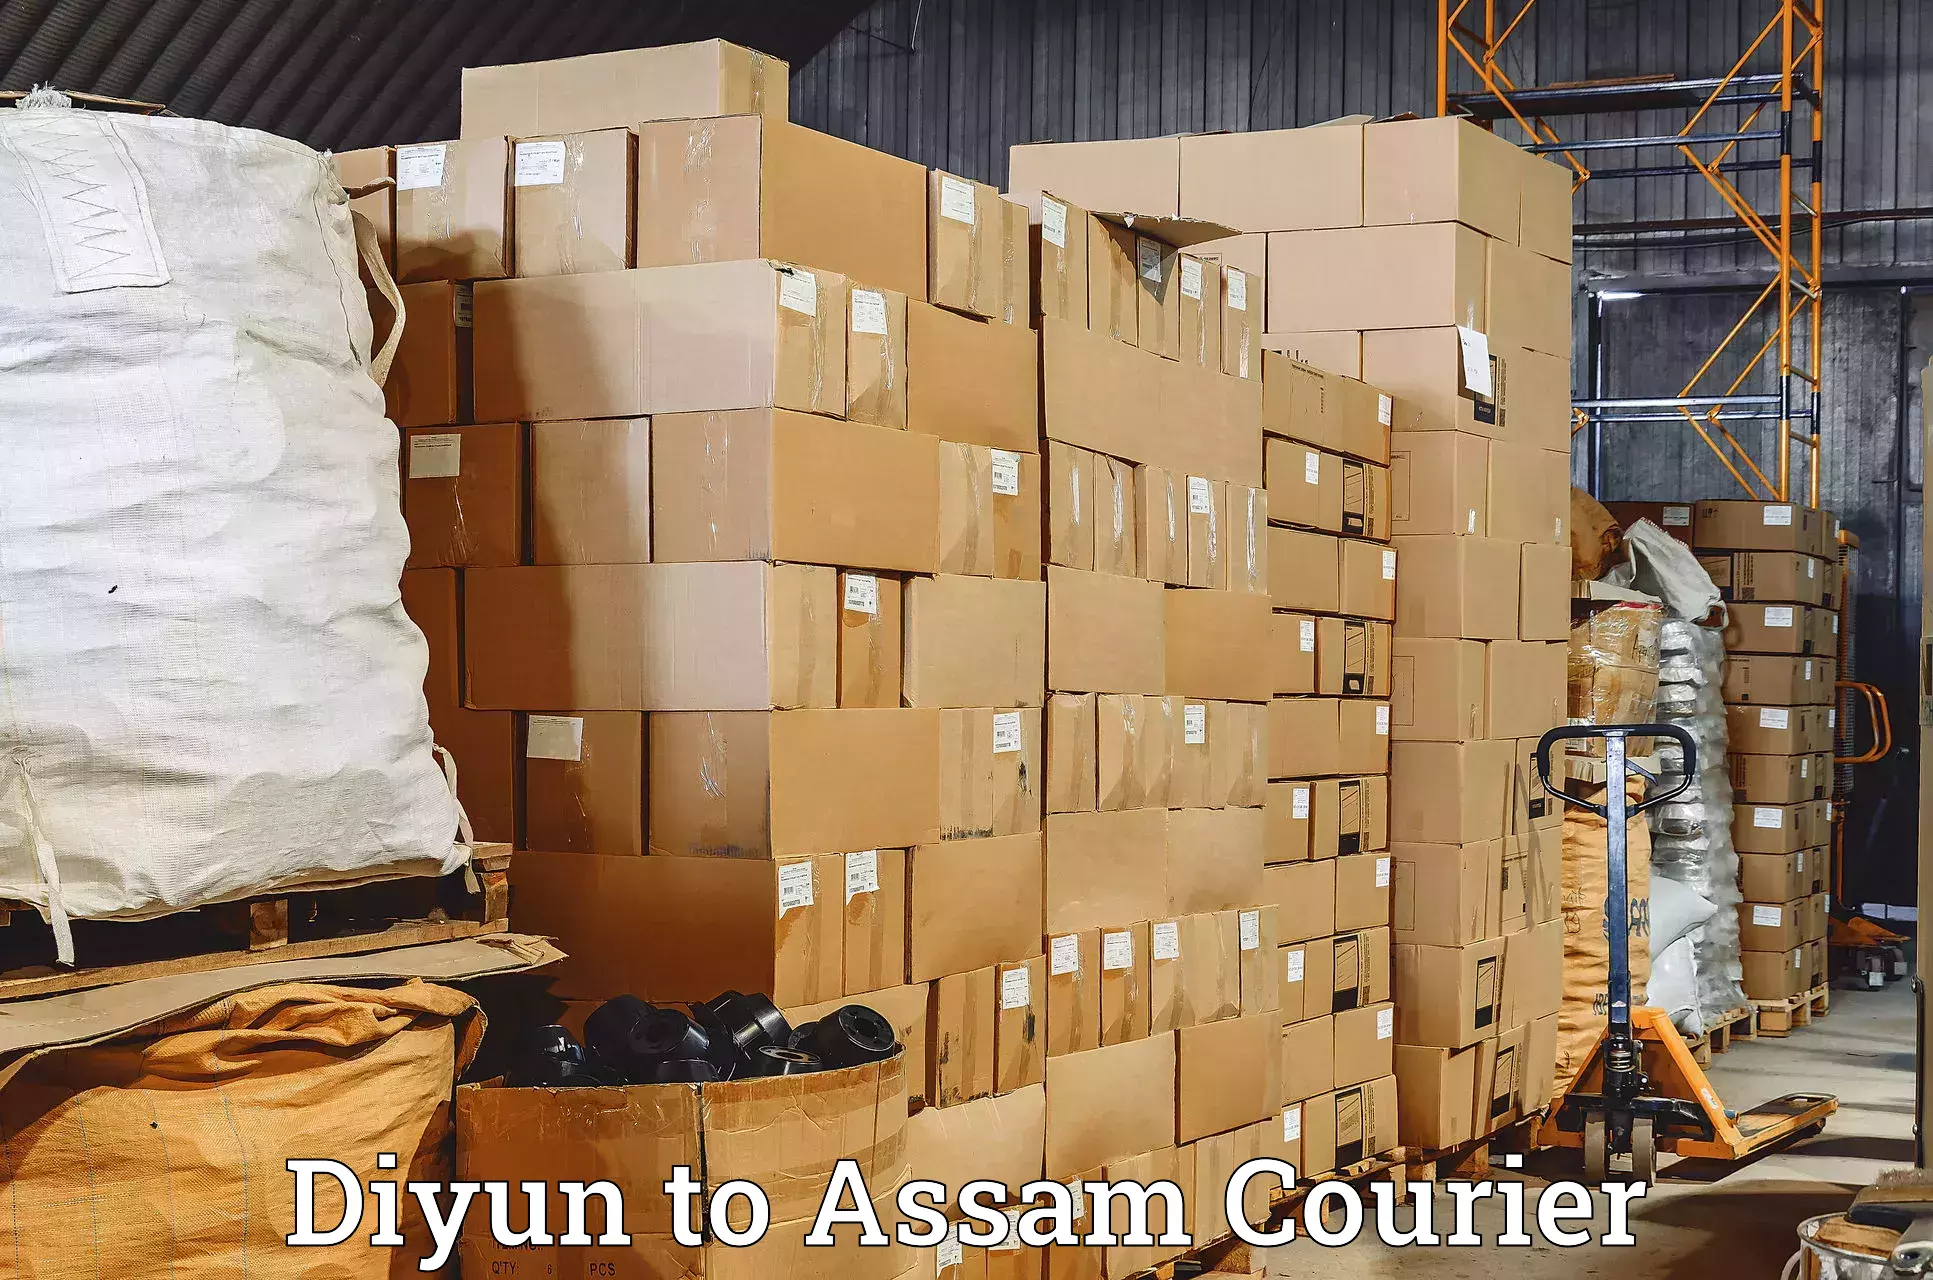 International courier rates Diyun to Rupai Siding